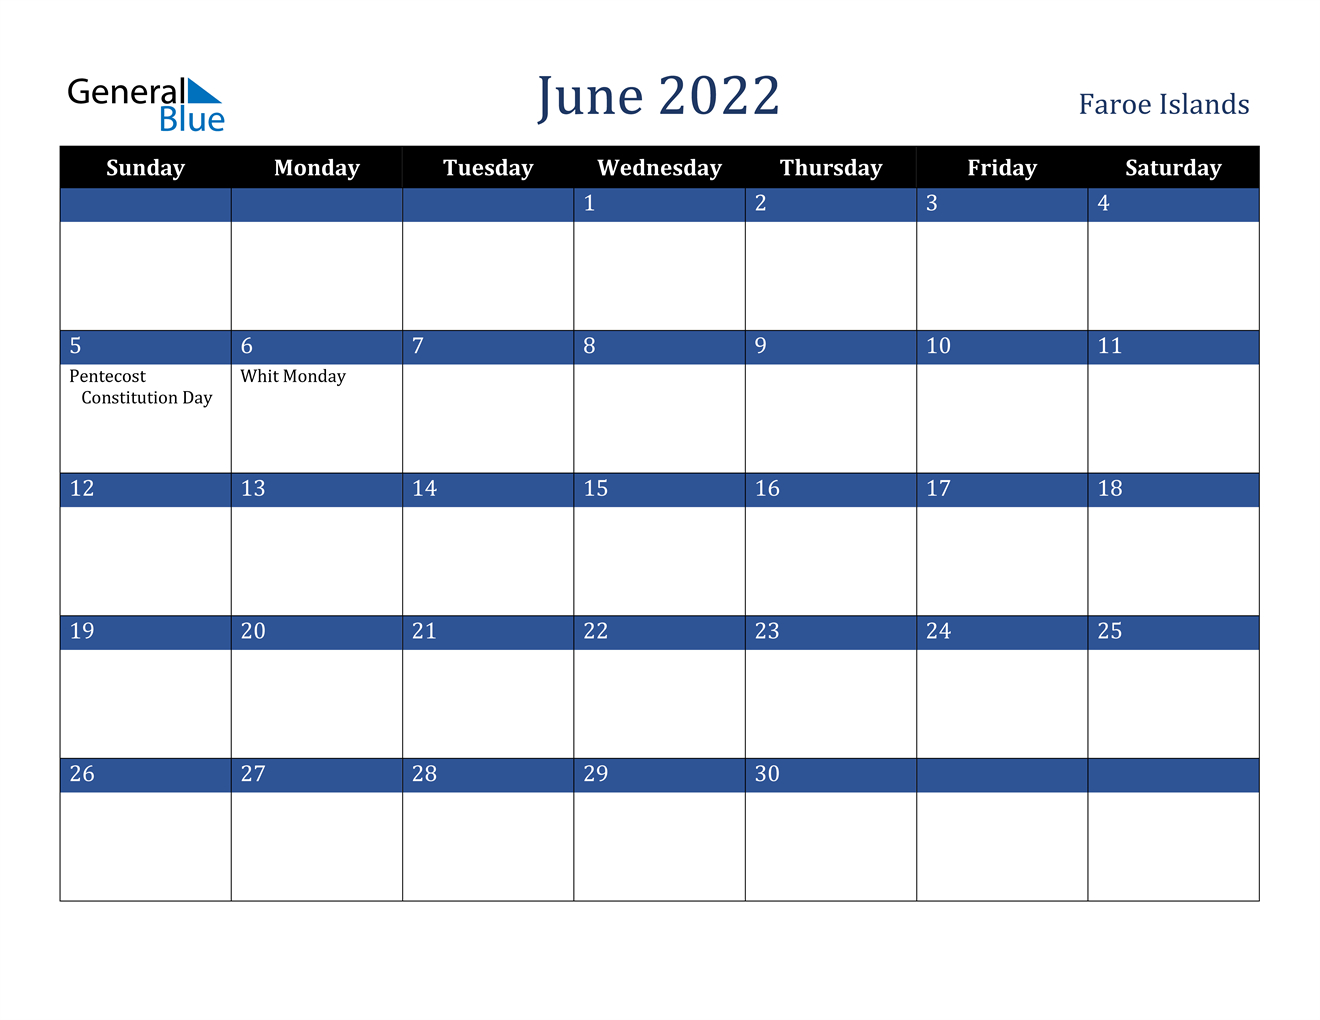 June 2022 Calendar - Faroe Islands